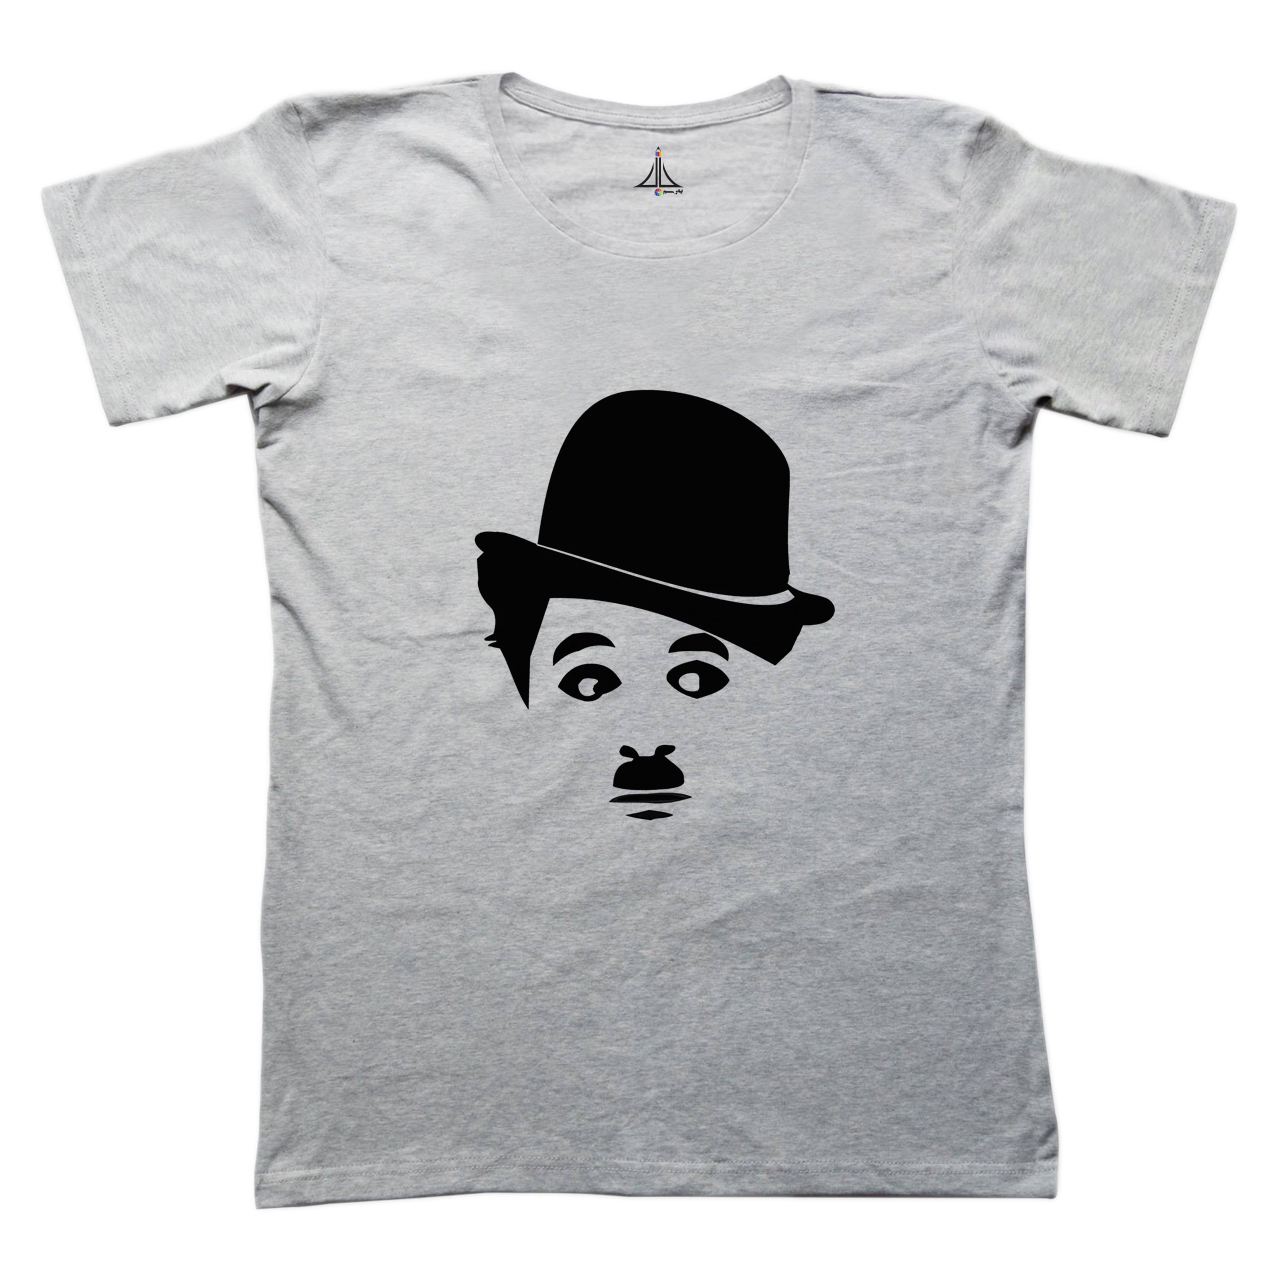 تی شرت مردانه به رسم طرح چارلی چاپلین کد 2267